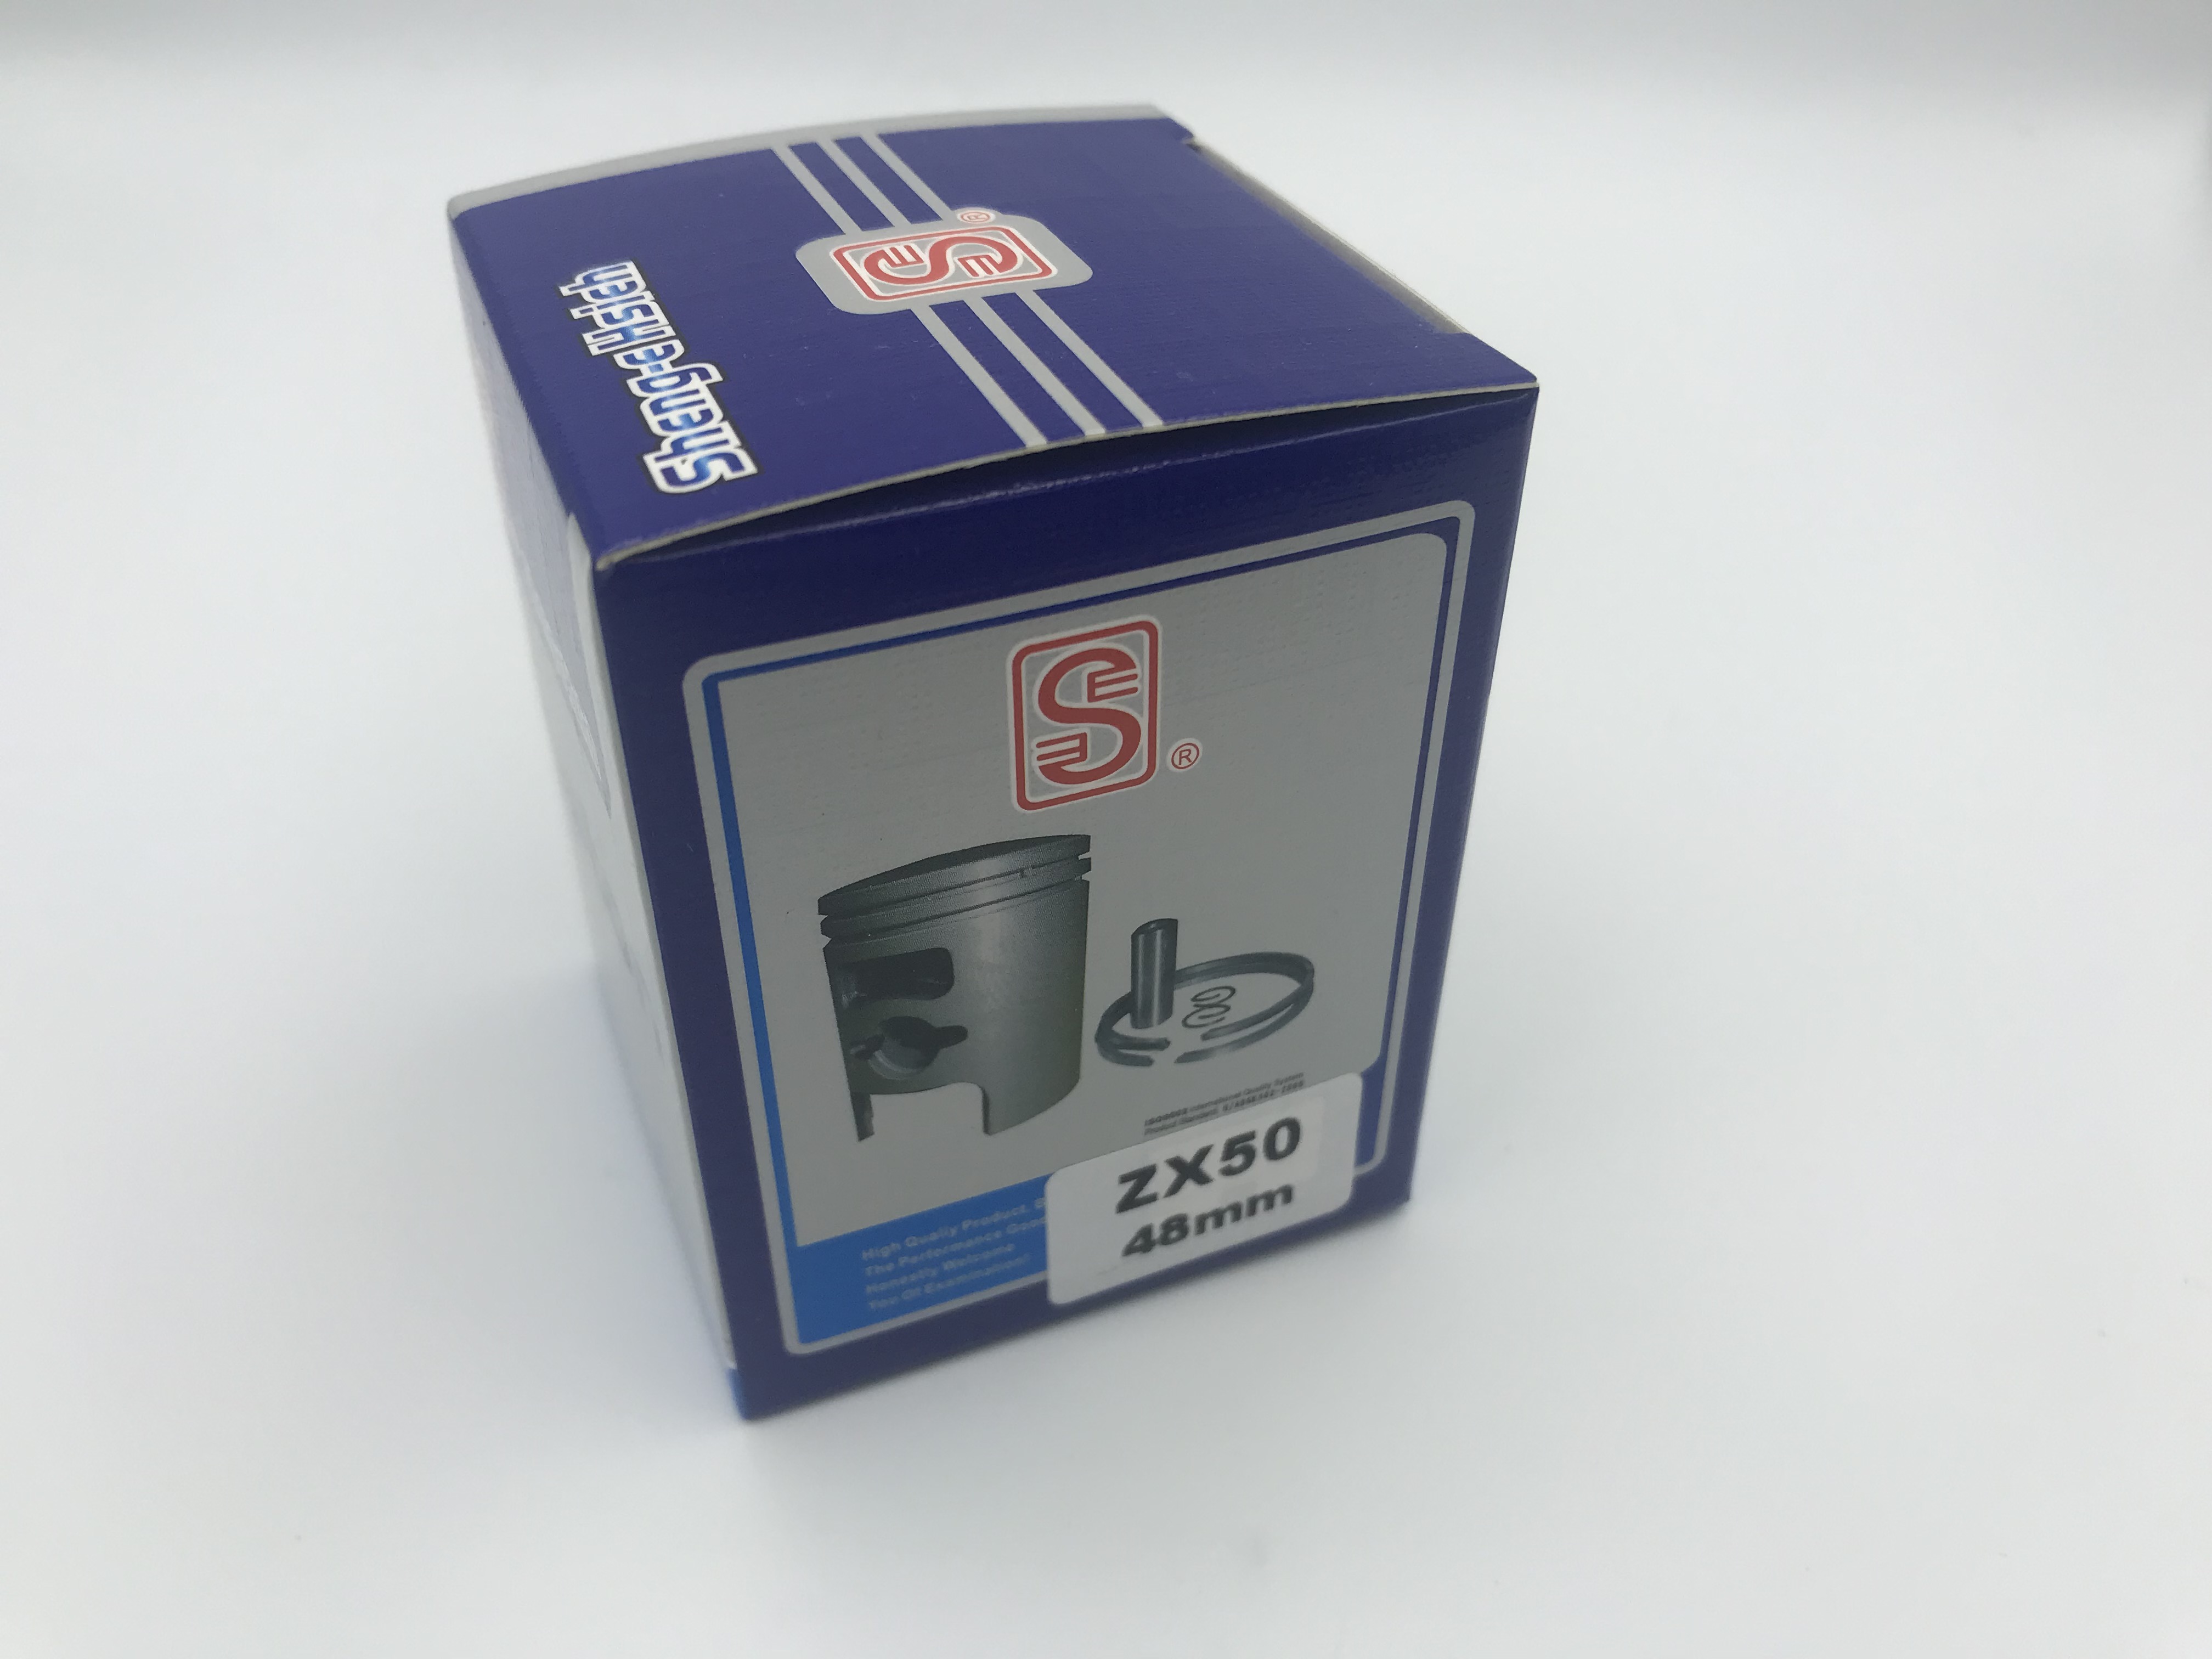 Купить Поршень Honda DIO ZX-50 (48mm) SEE в интернет-магазине zipmoto.ru | Интернет-магазин для японских скутеров